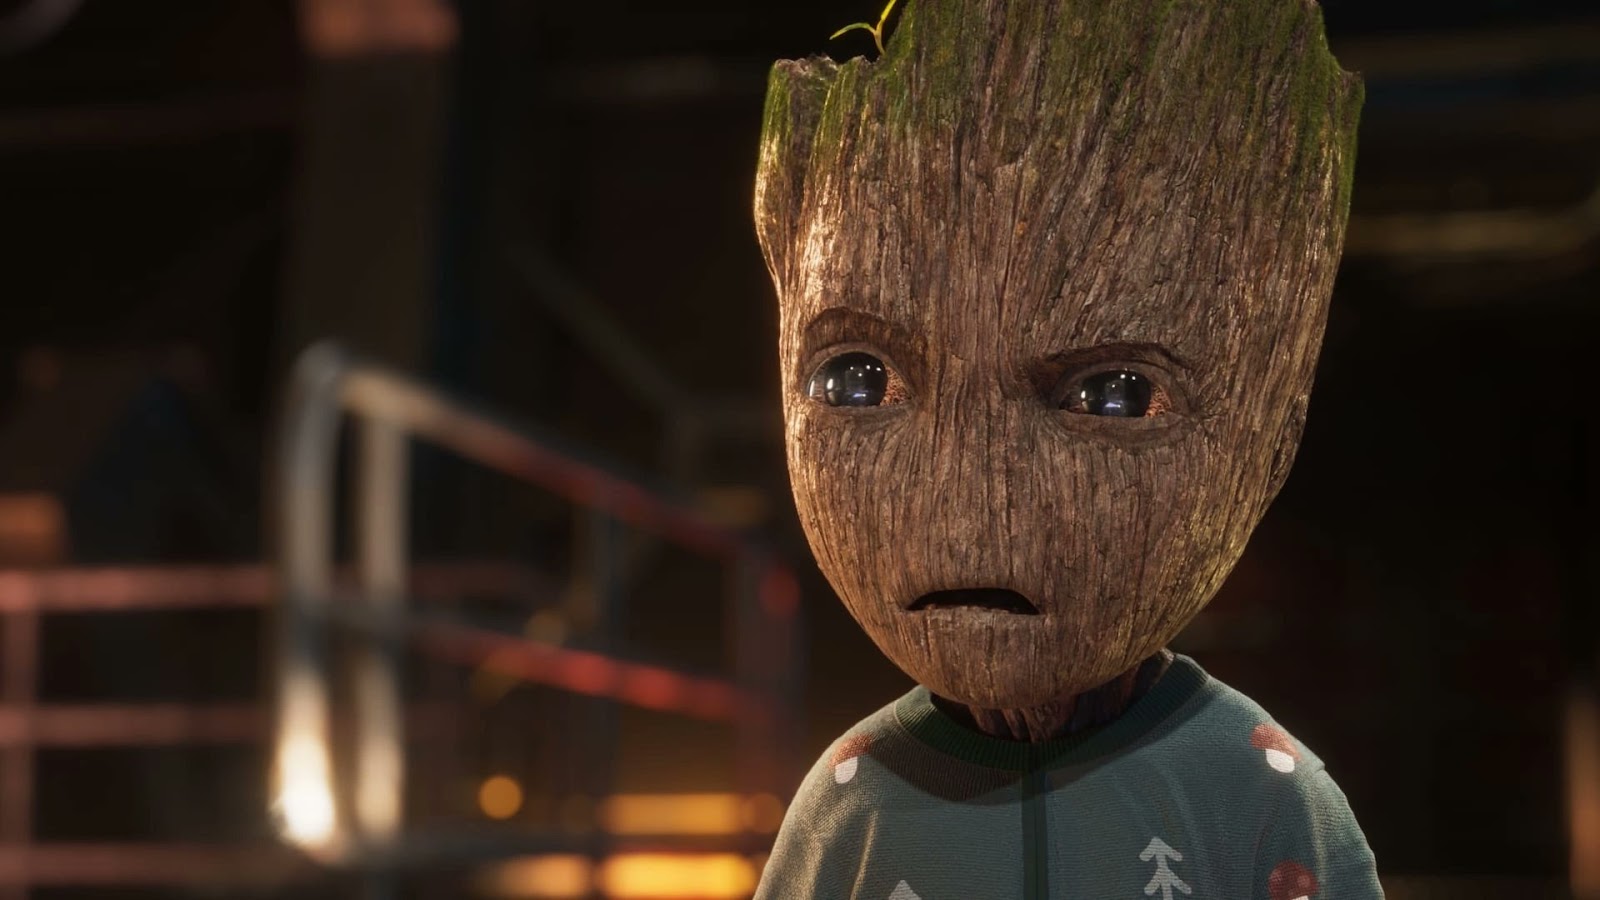 Eu sou Groot | Os melhores momentos do personagem no MCU